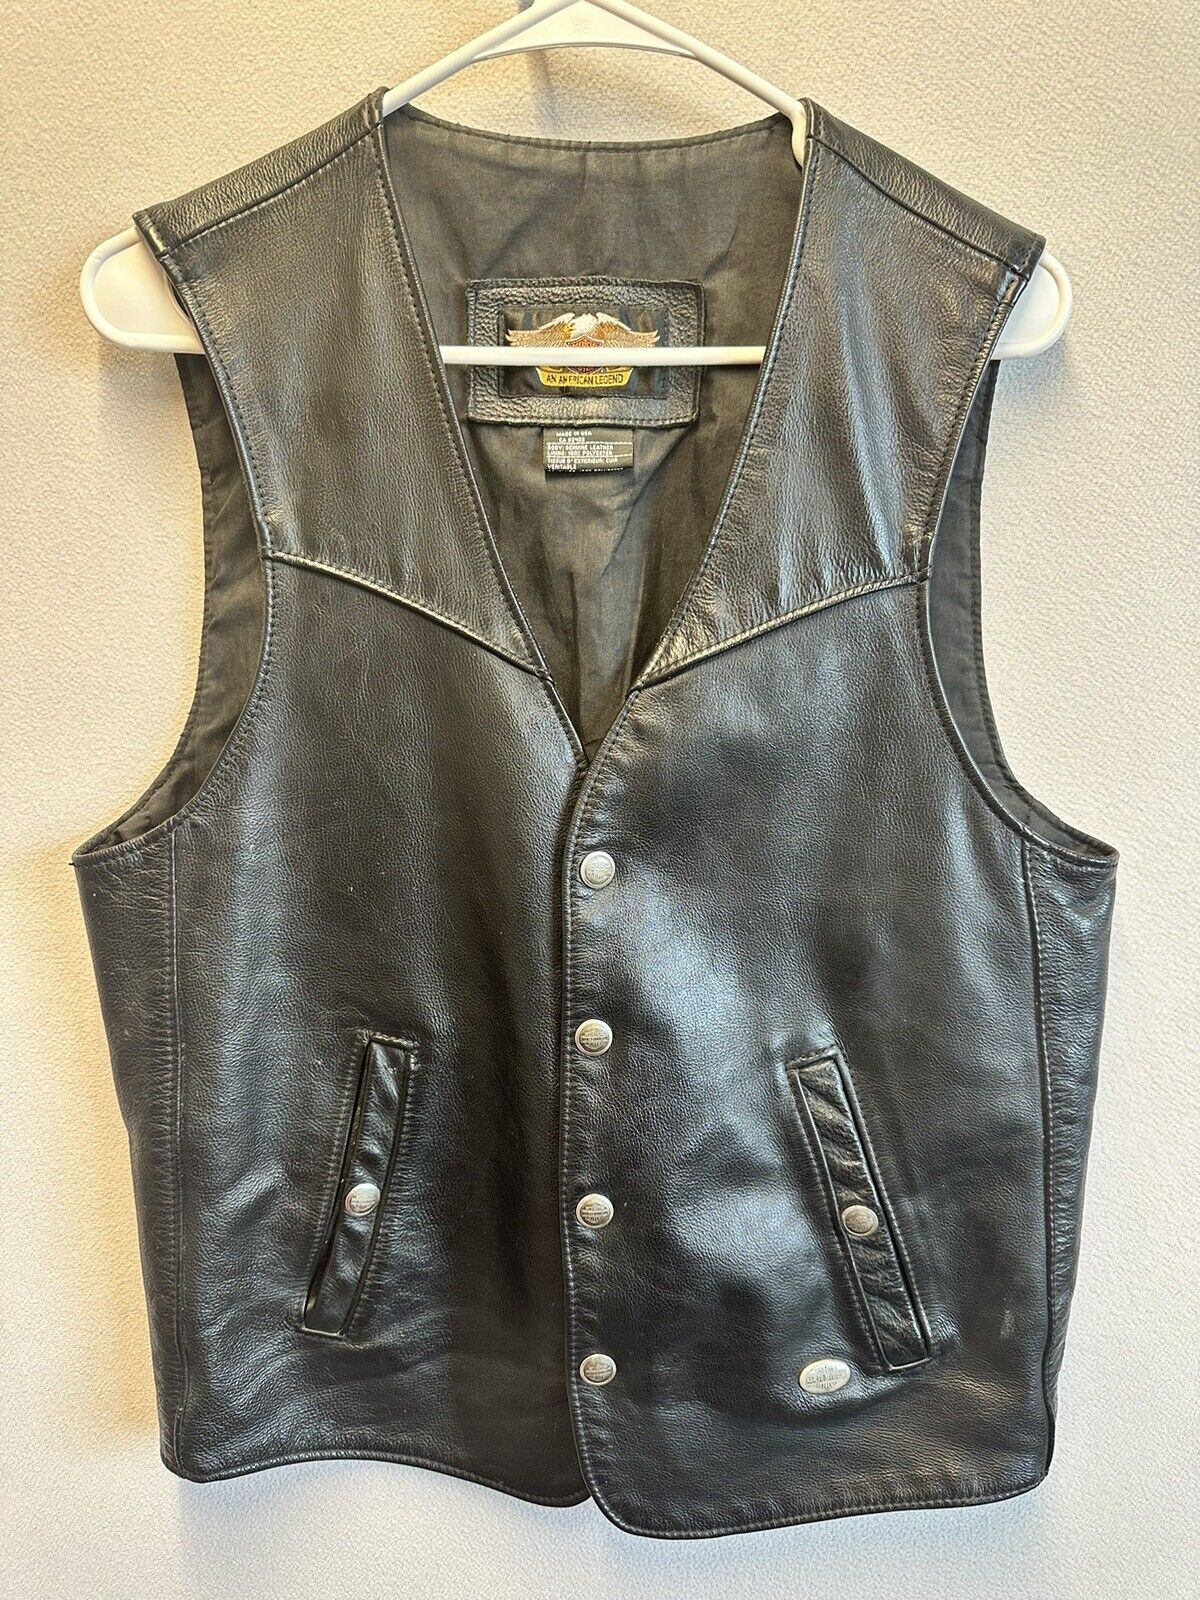 Vintage Men’s Harley Davidson Leather Button Up Biker Vest Made In USA Size M